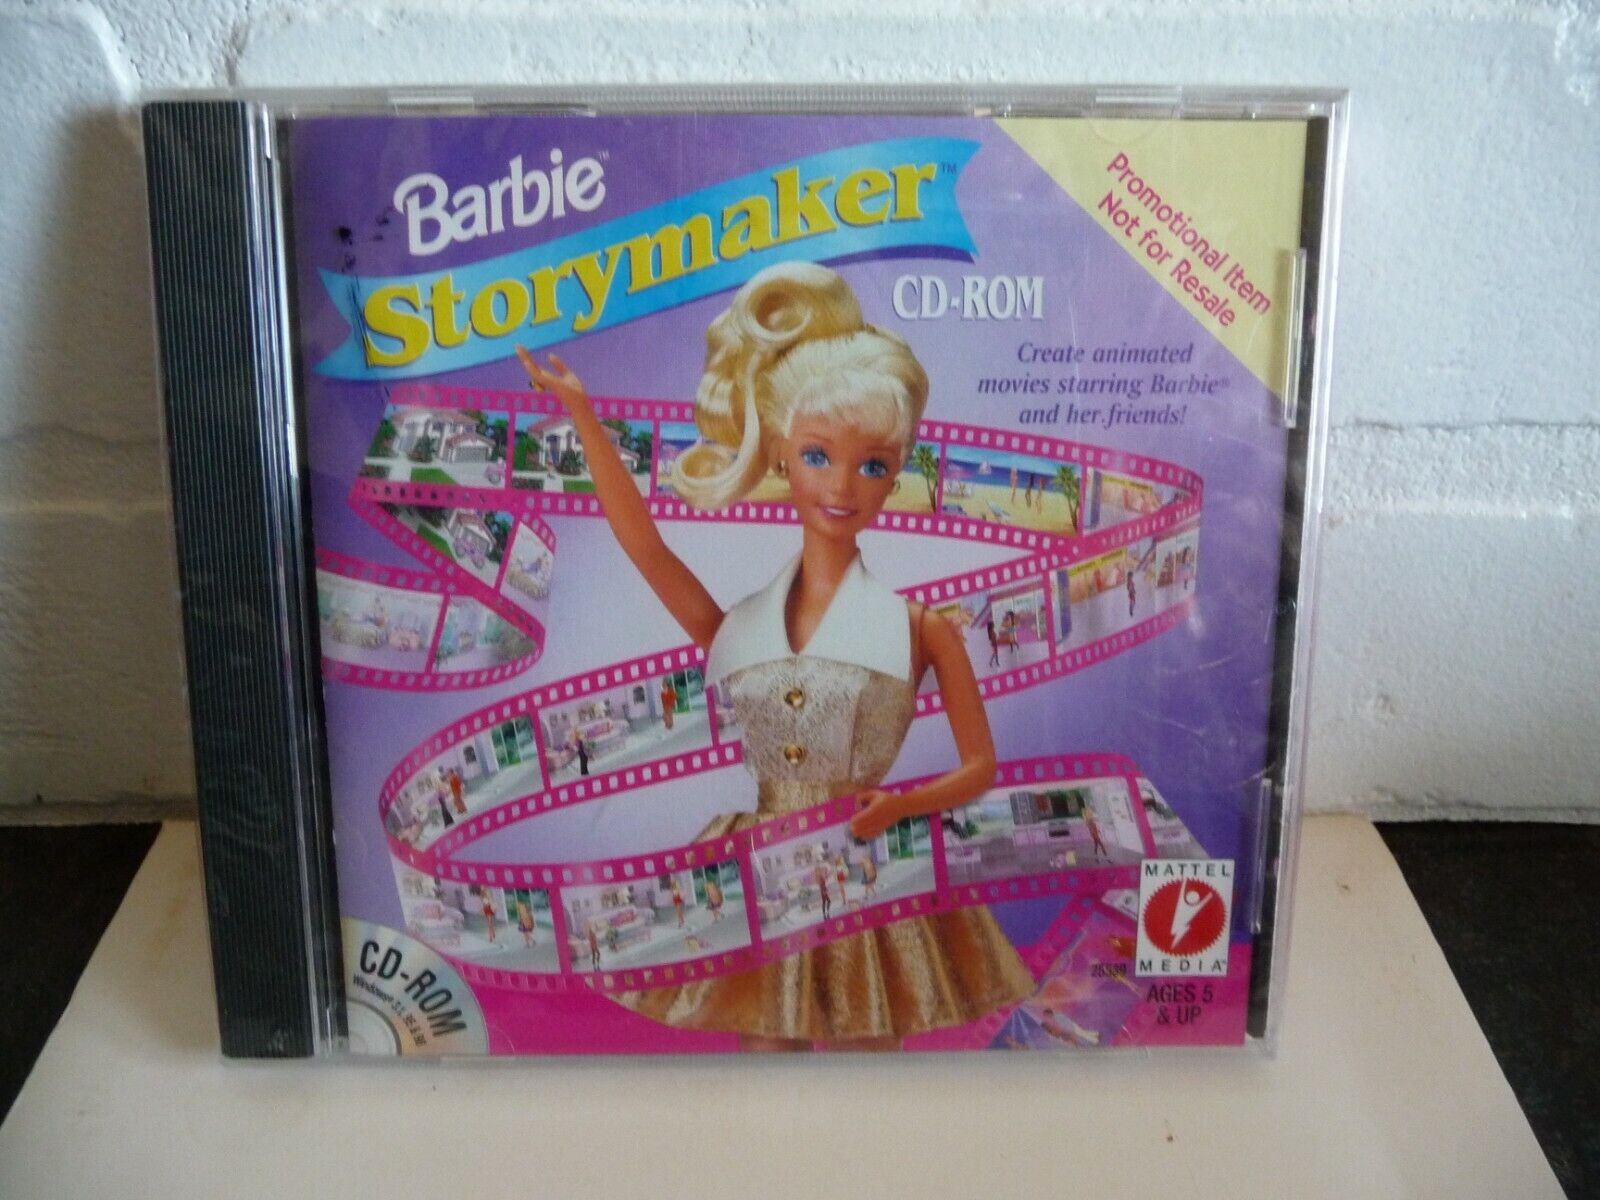 NEW Barbie “Storymaker” CD-ROM for Windows Promo Item, 1999 Mattel Media #25539